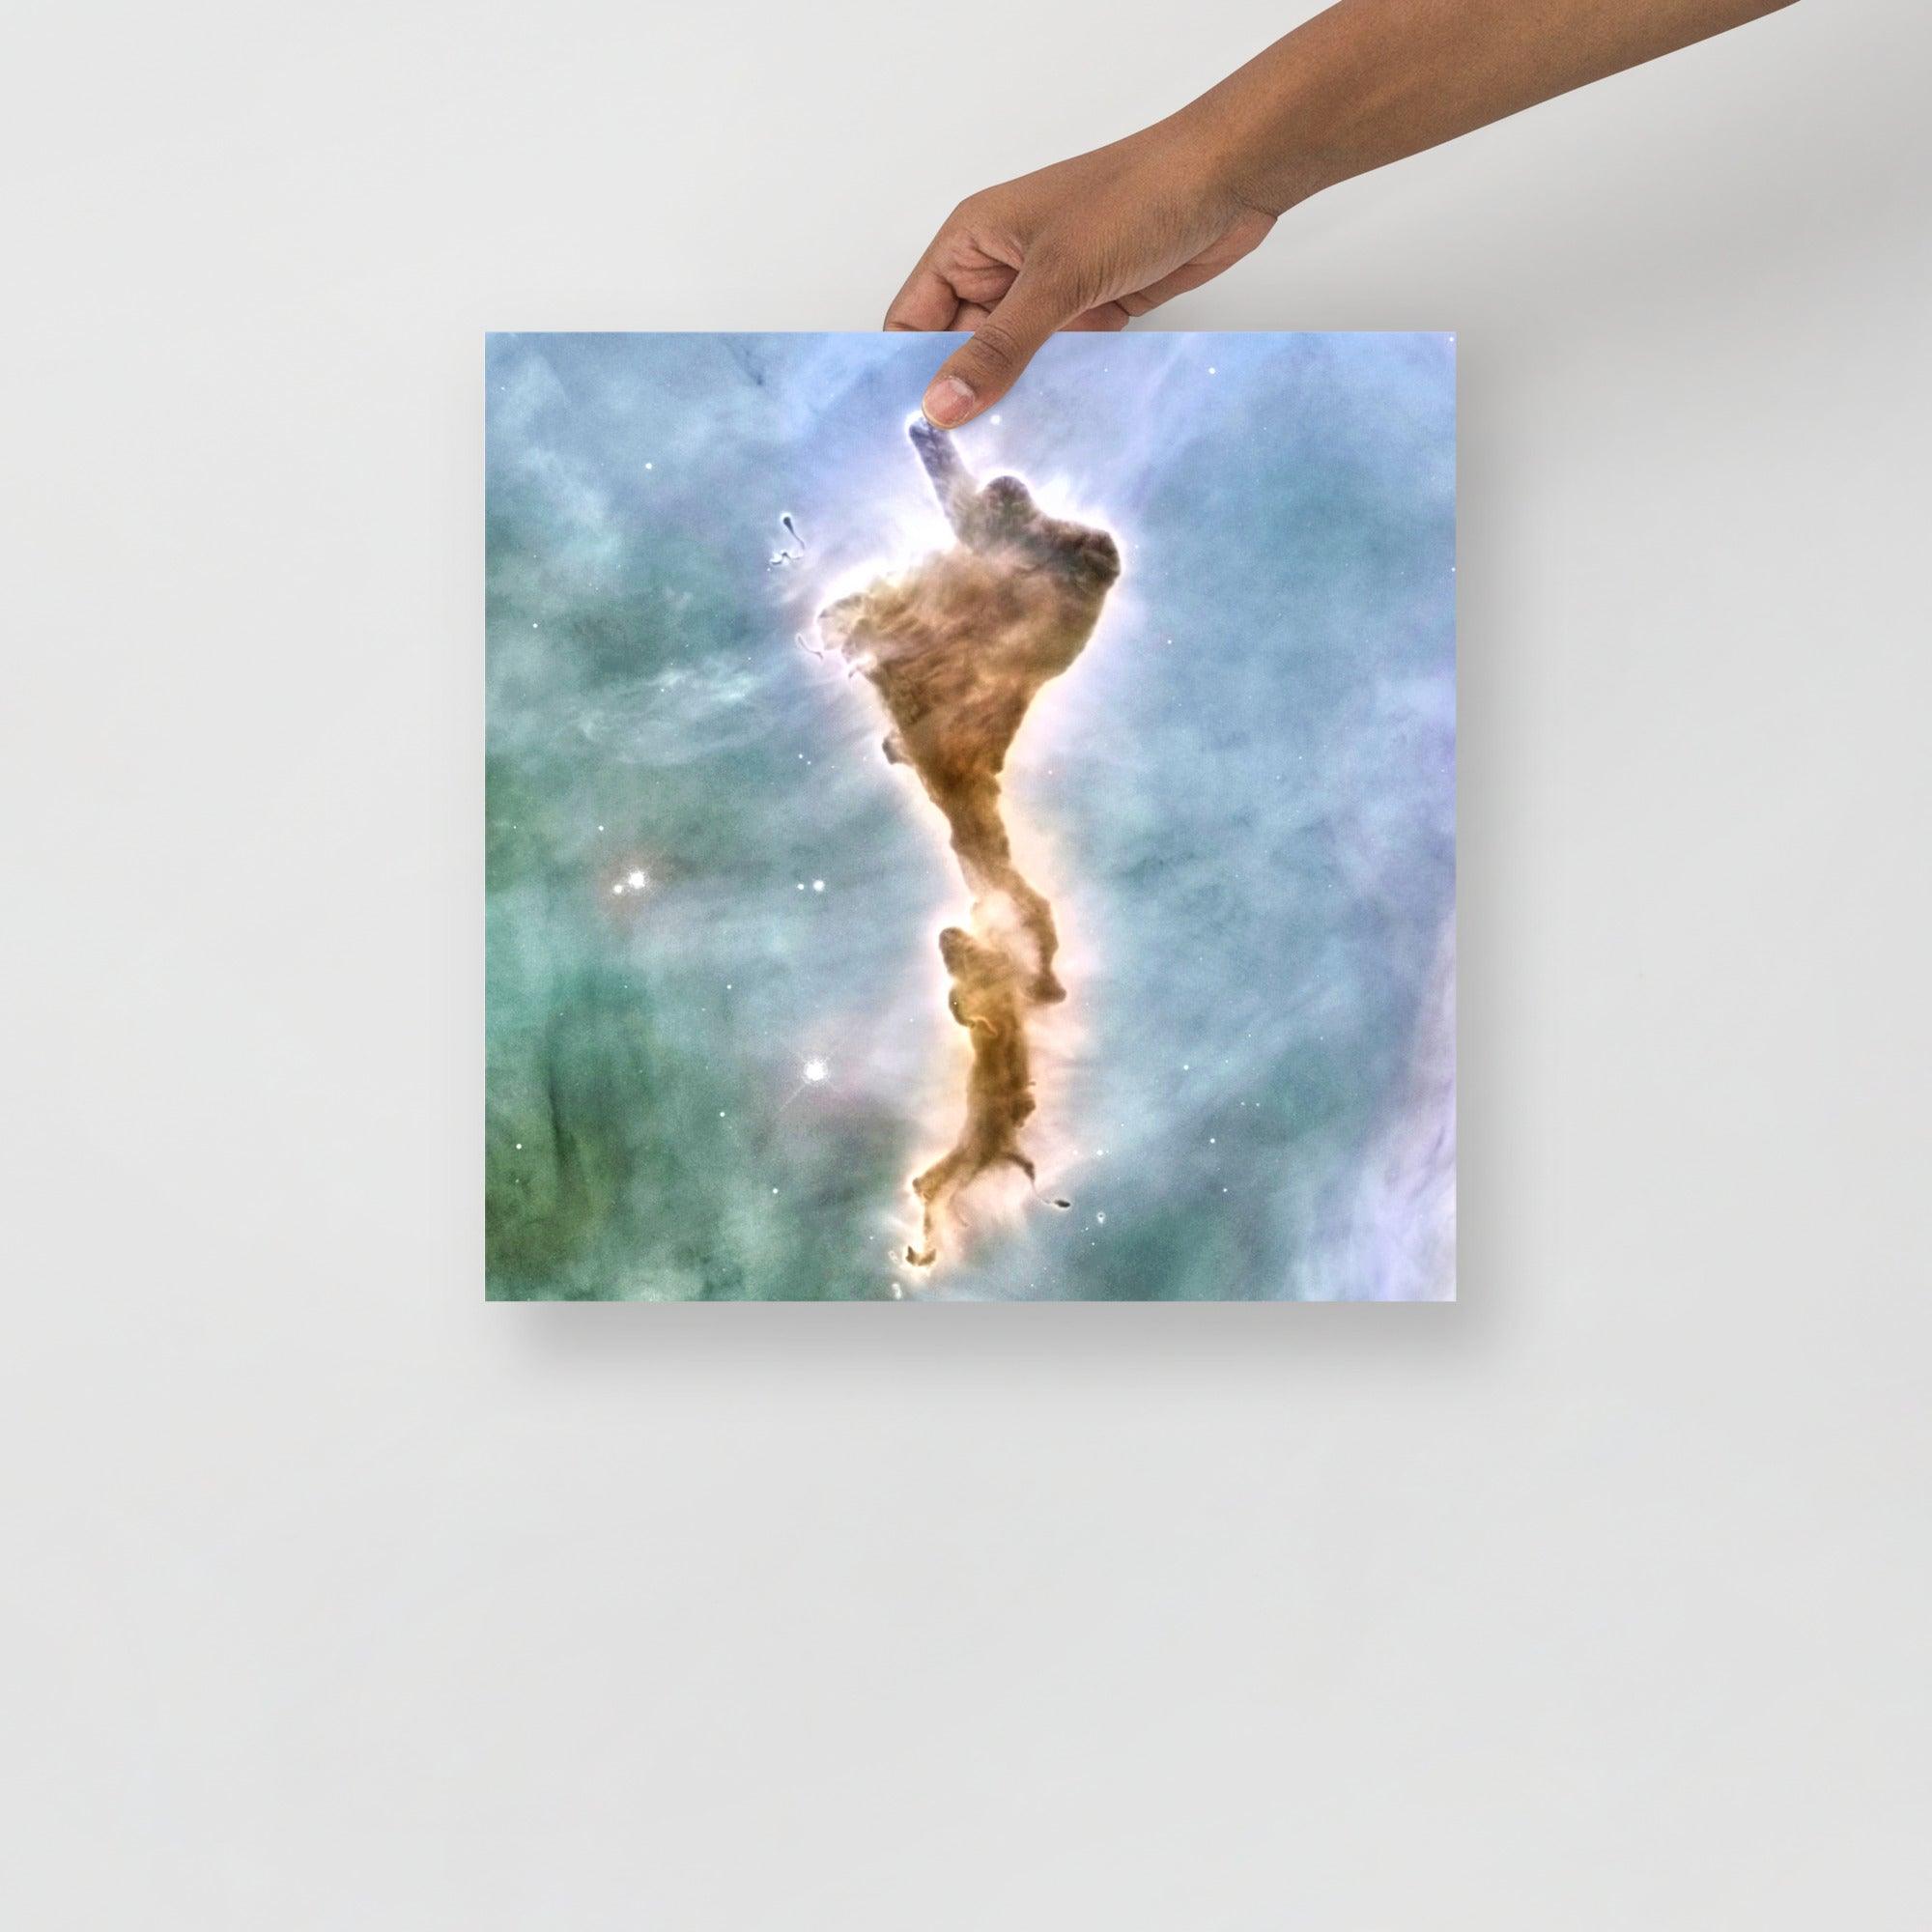 A Finger of God (Carina Nebula) poster on a plain backdrop in size 14x14”.